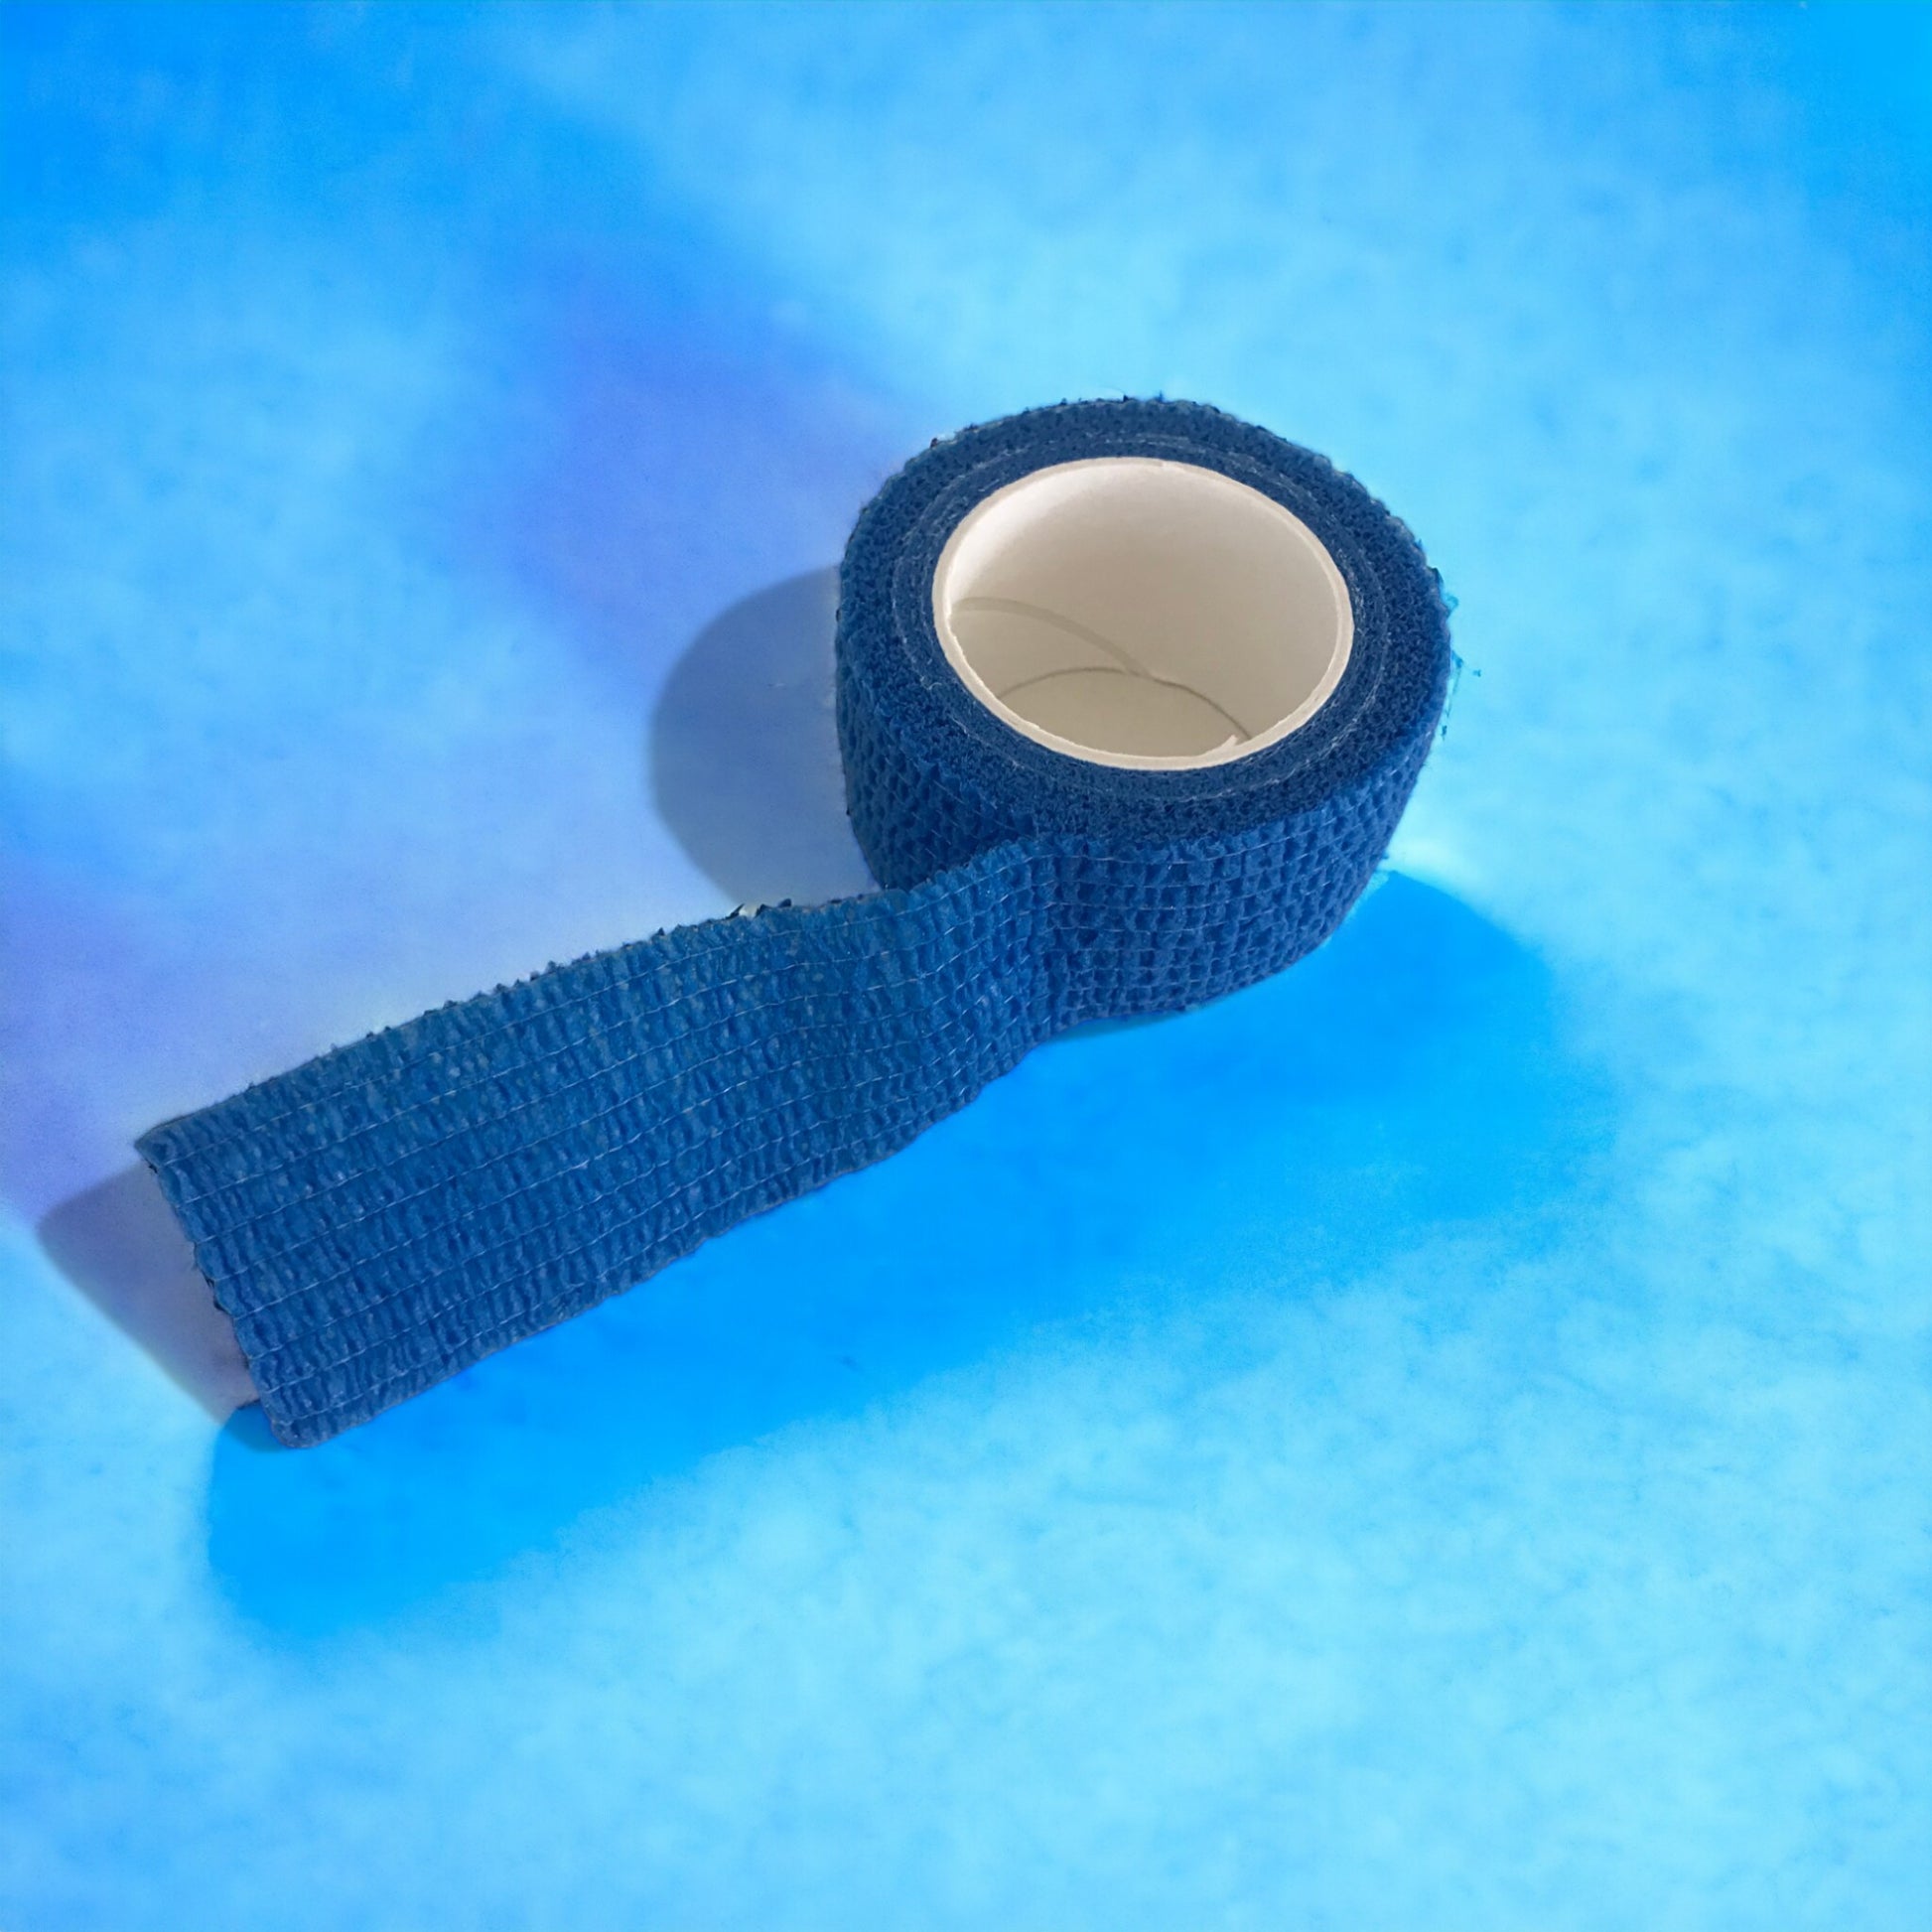 Professioneller selbstklebender elastischer Verband in blauer Farbe - 10 cm x 4,5 m - Set mit 3 Rollen, speziell für die Tieranwendung entwickelt.